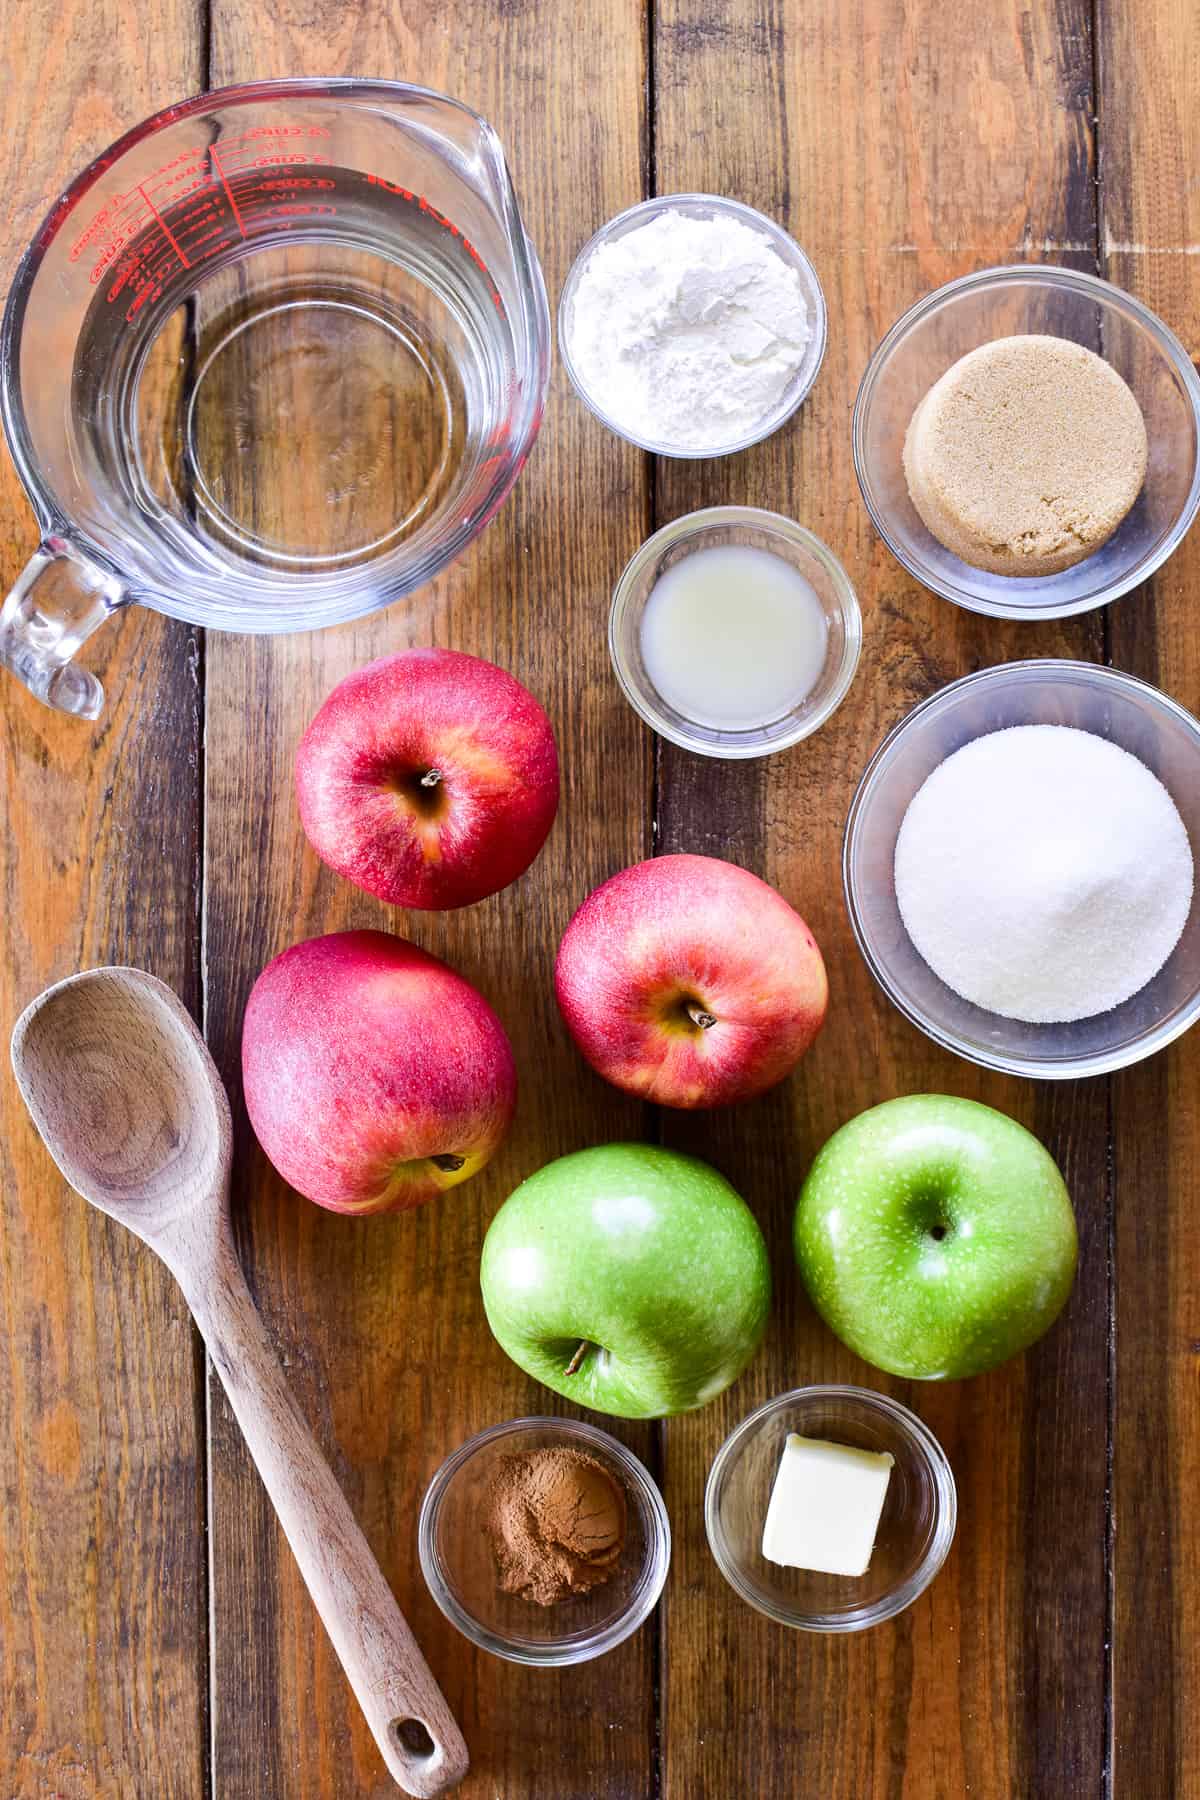 Apple pie filling ingredients on a wooden board